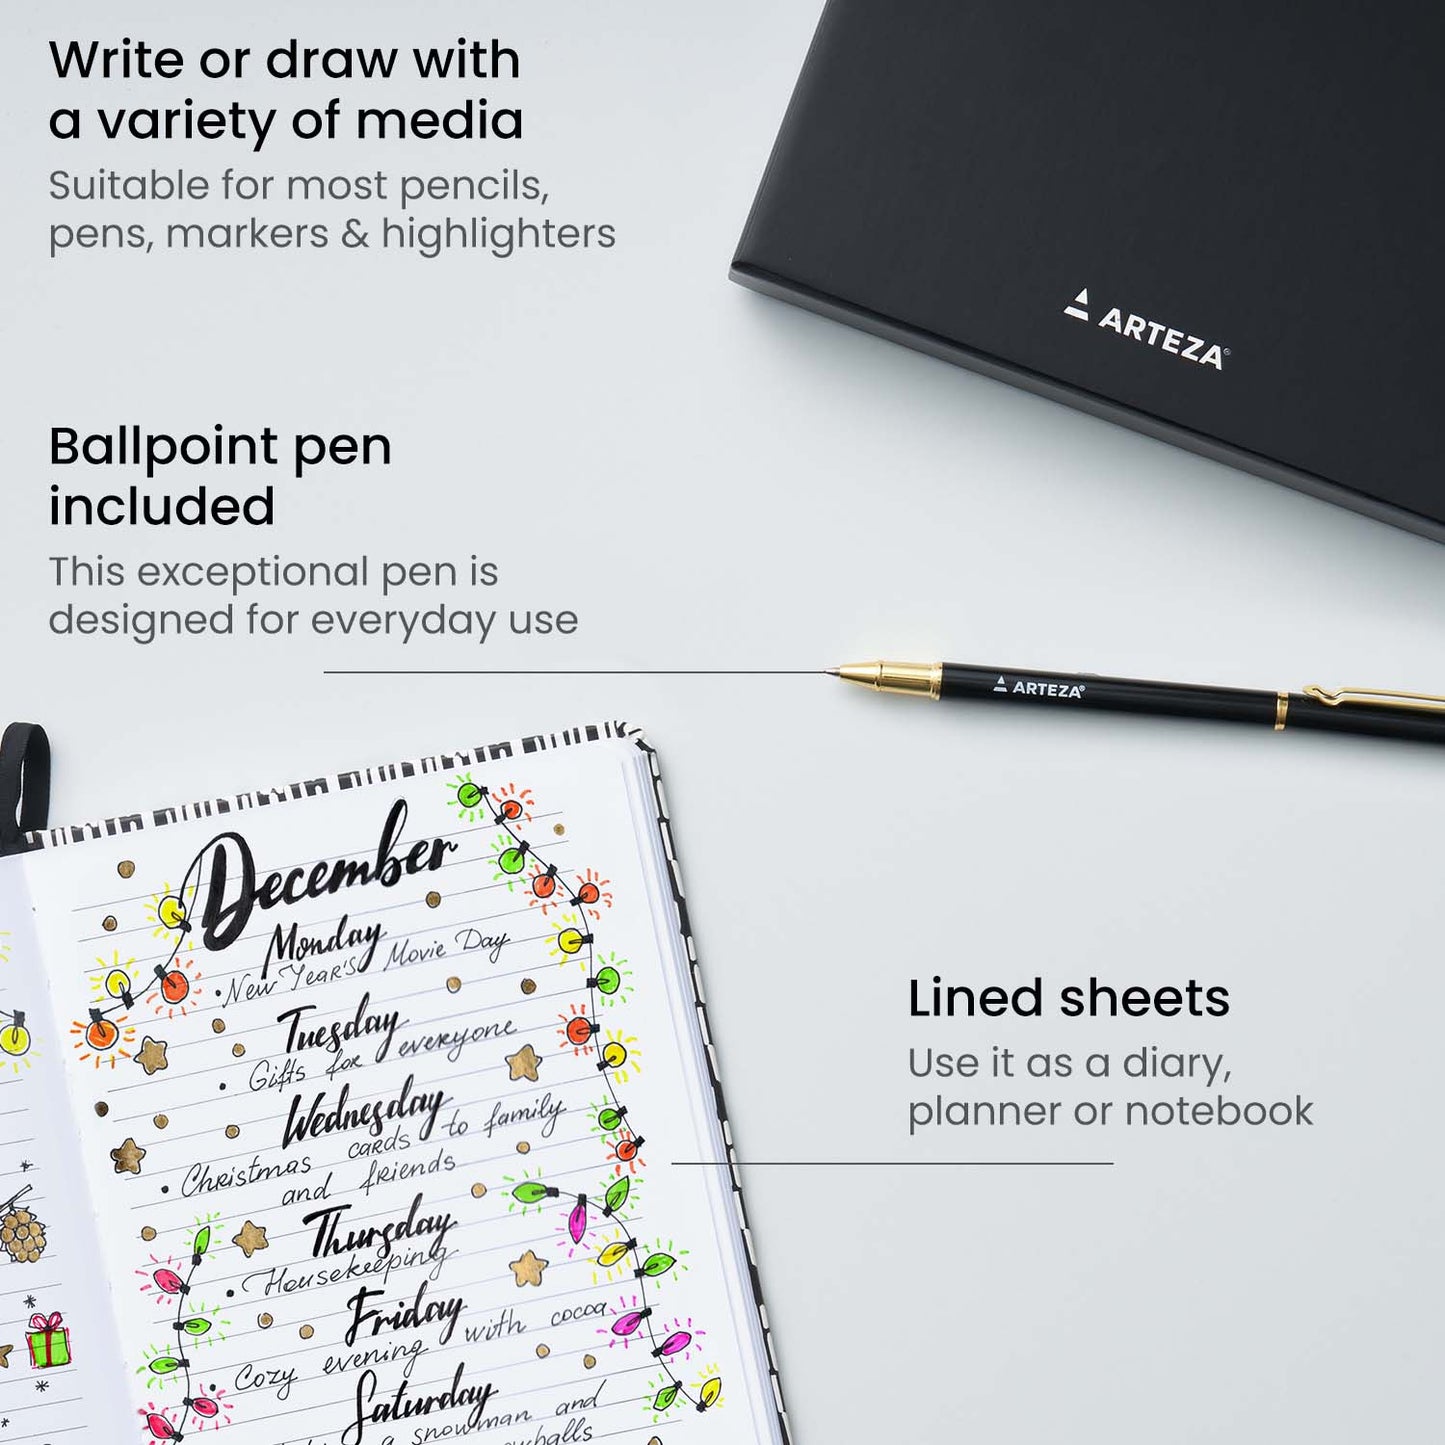 Hardcover Journal Gift Set, White & Black Design